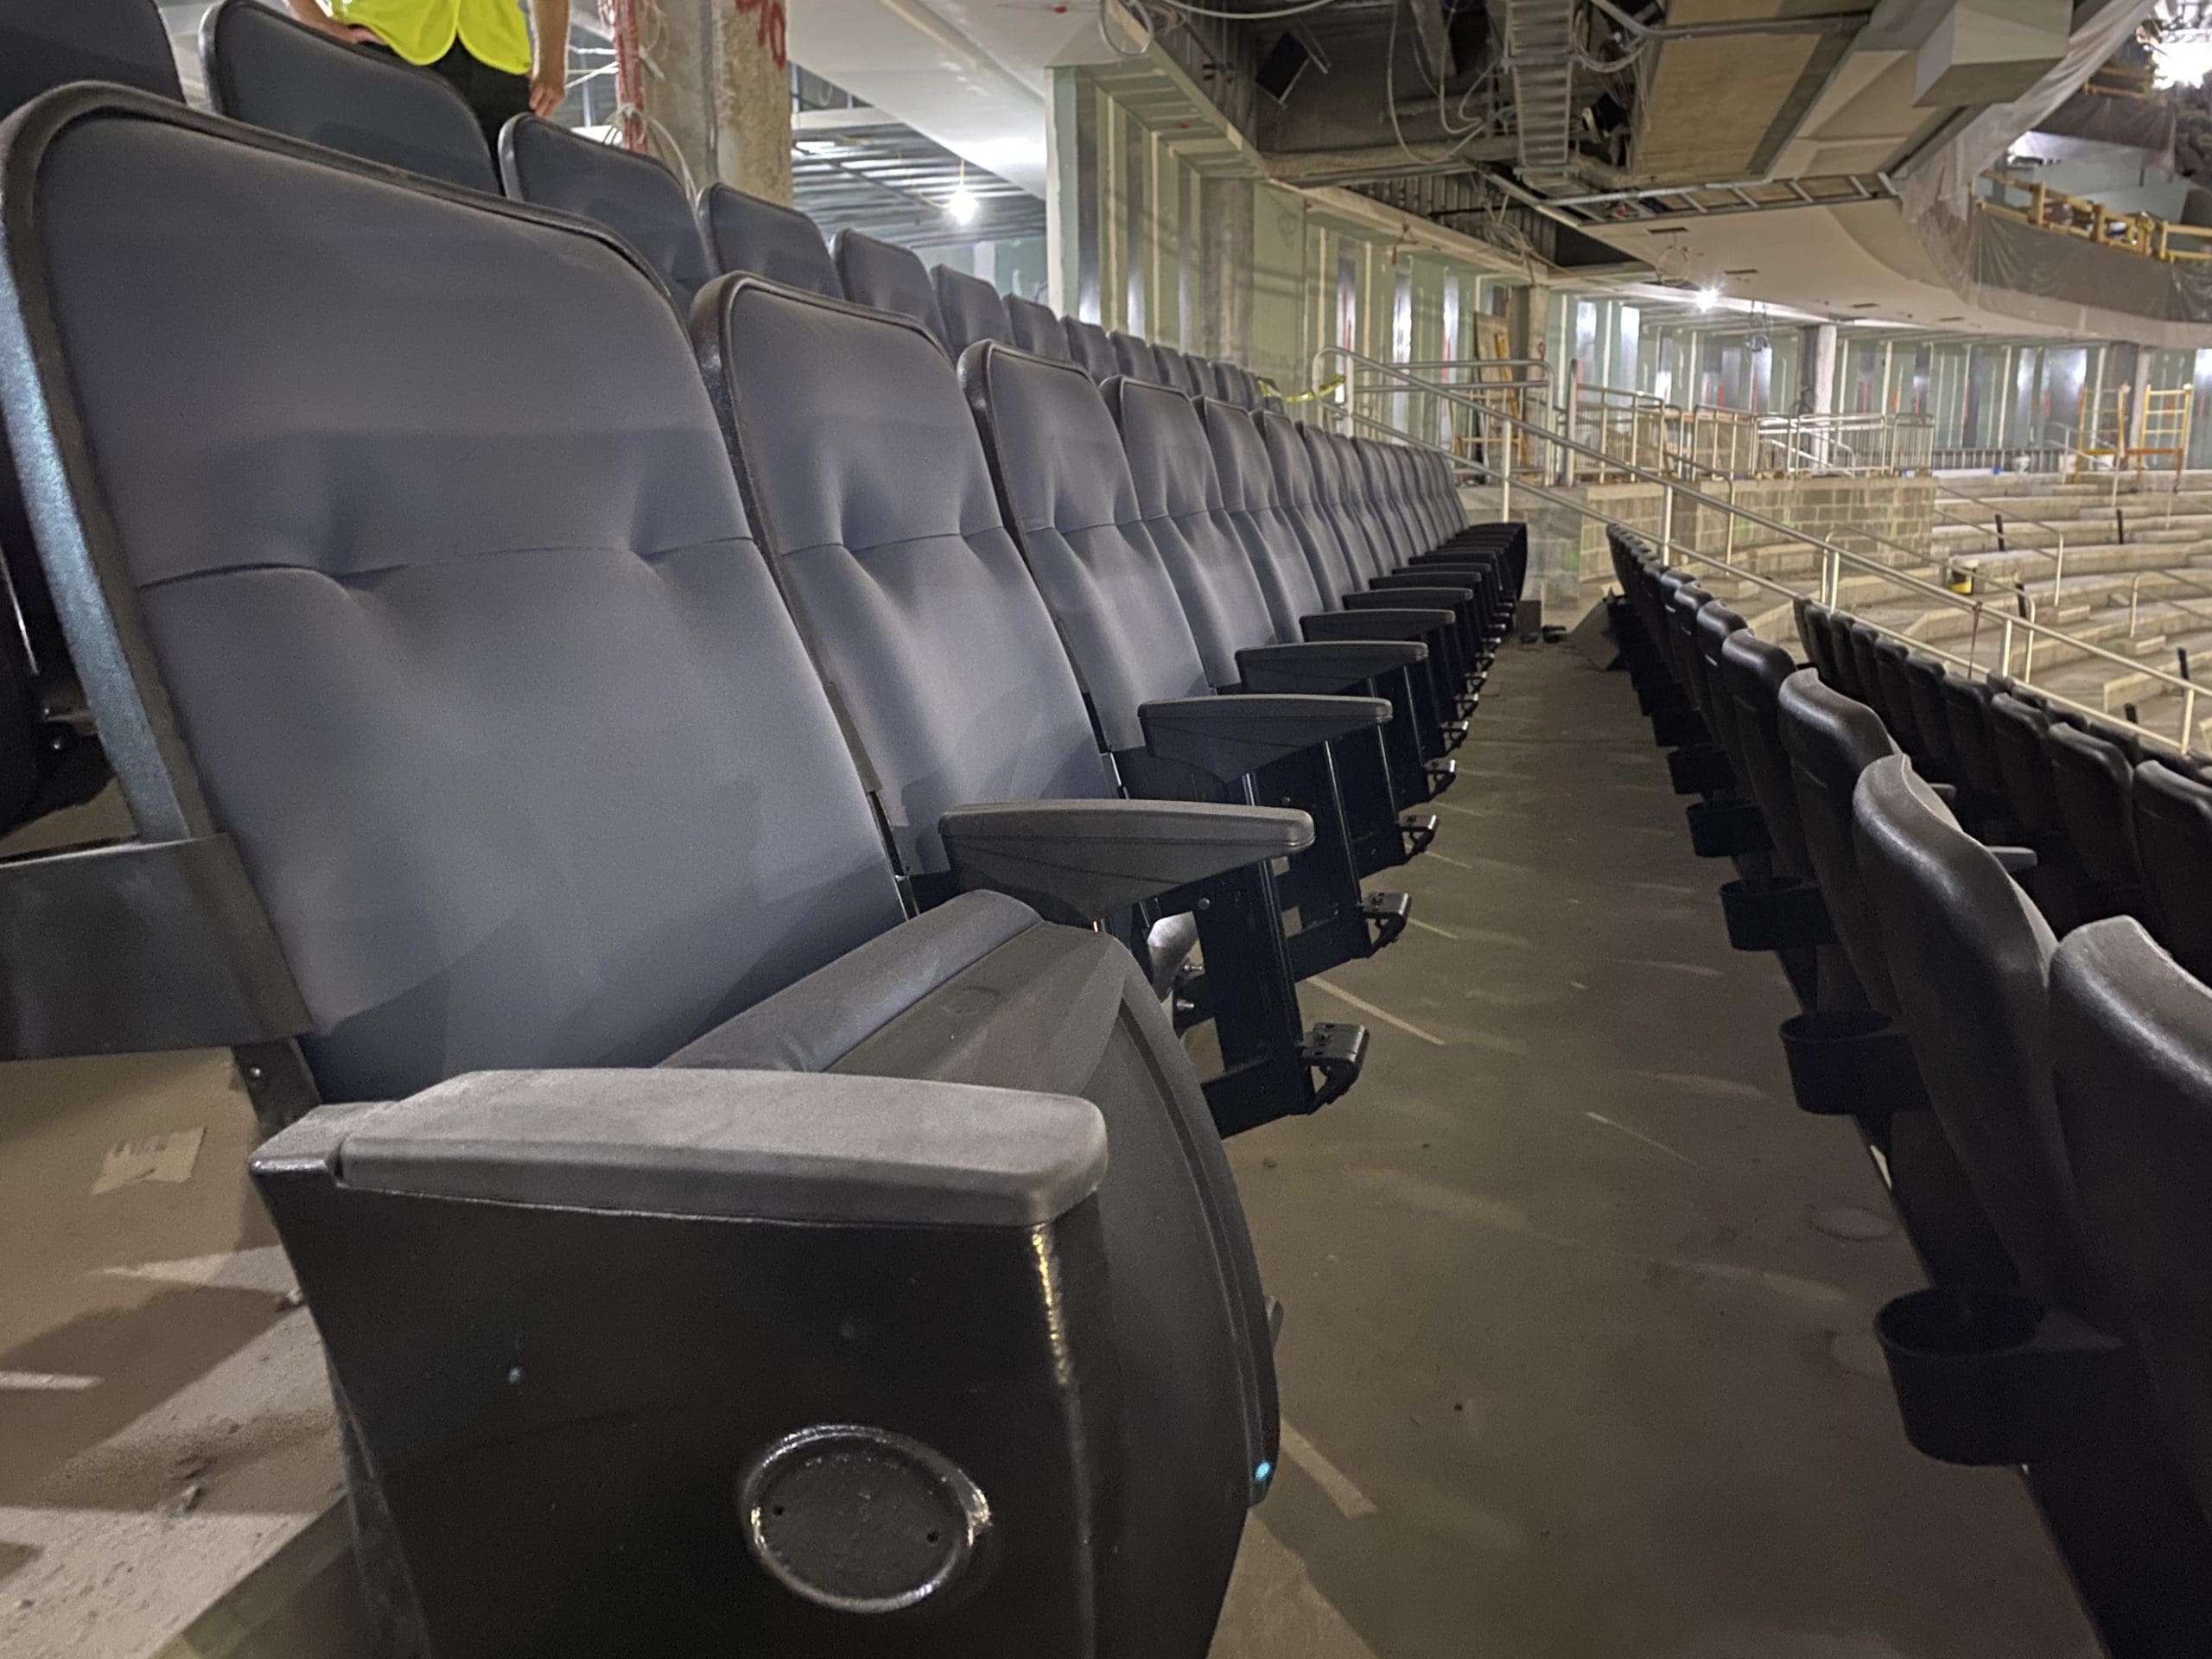 UBS Arena seats, New York Islanders